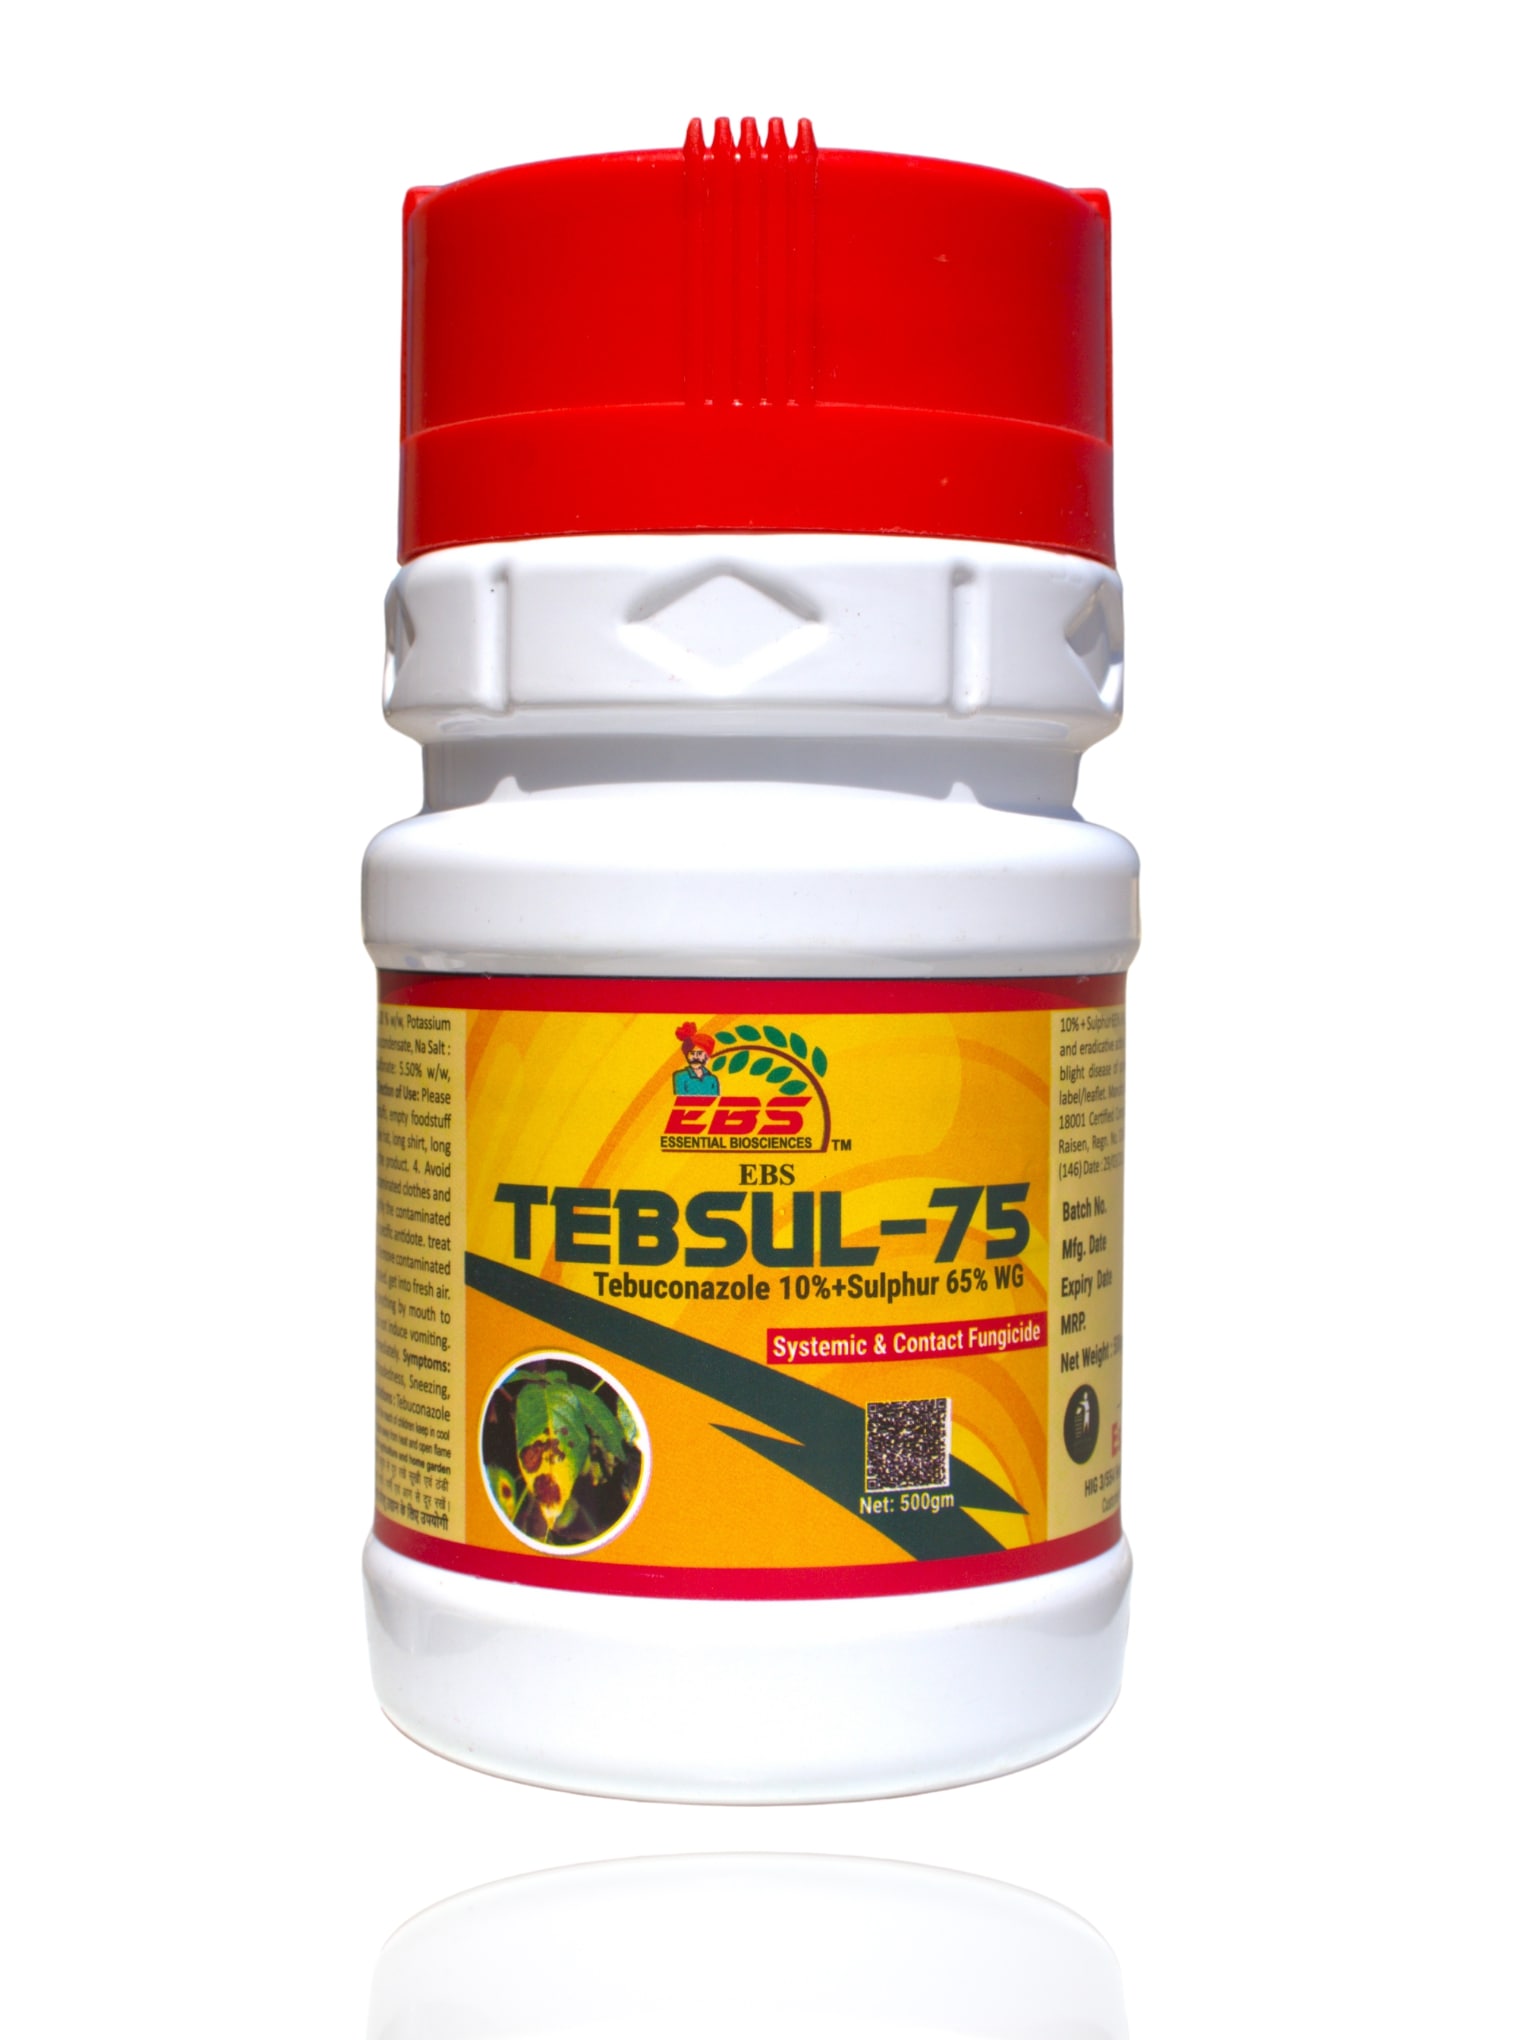 EBS TEBSUL-75 TEBUCONAZOLE 10% + SULPHUR 65% WG